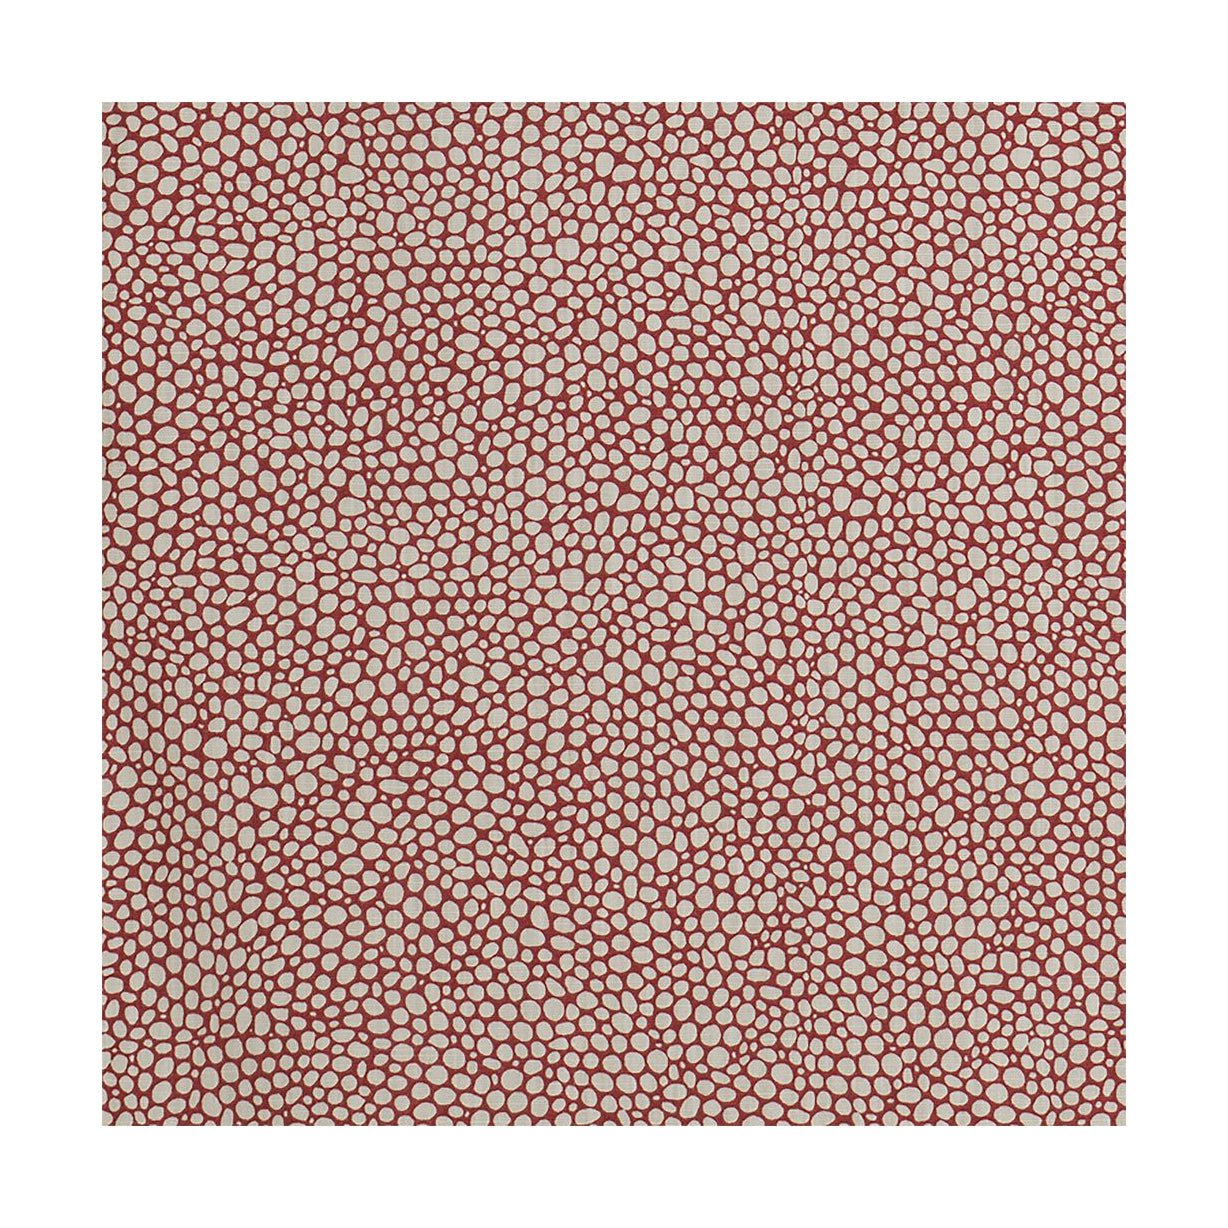 Larghezza del tessuto Spira Dotte 150 cm (prezzo per metro), rosso